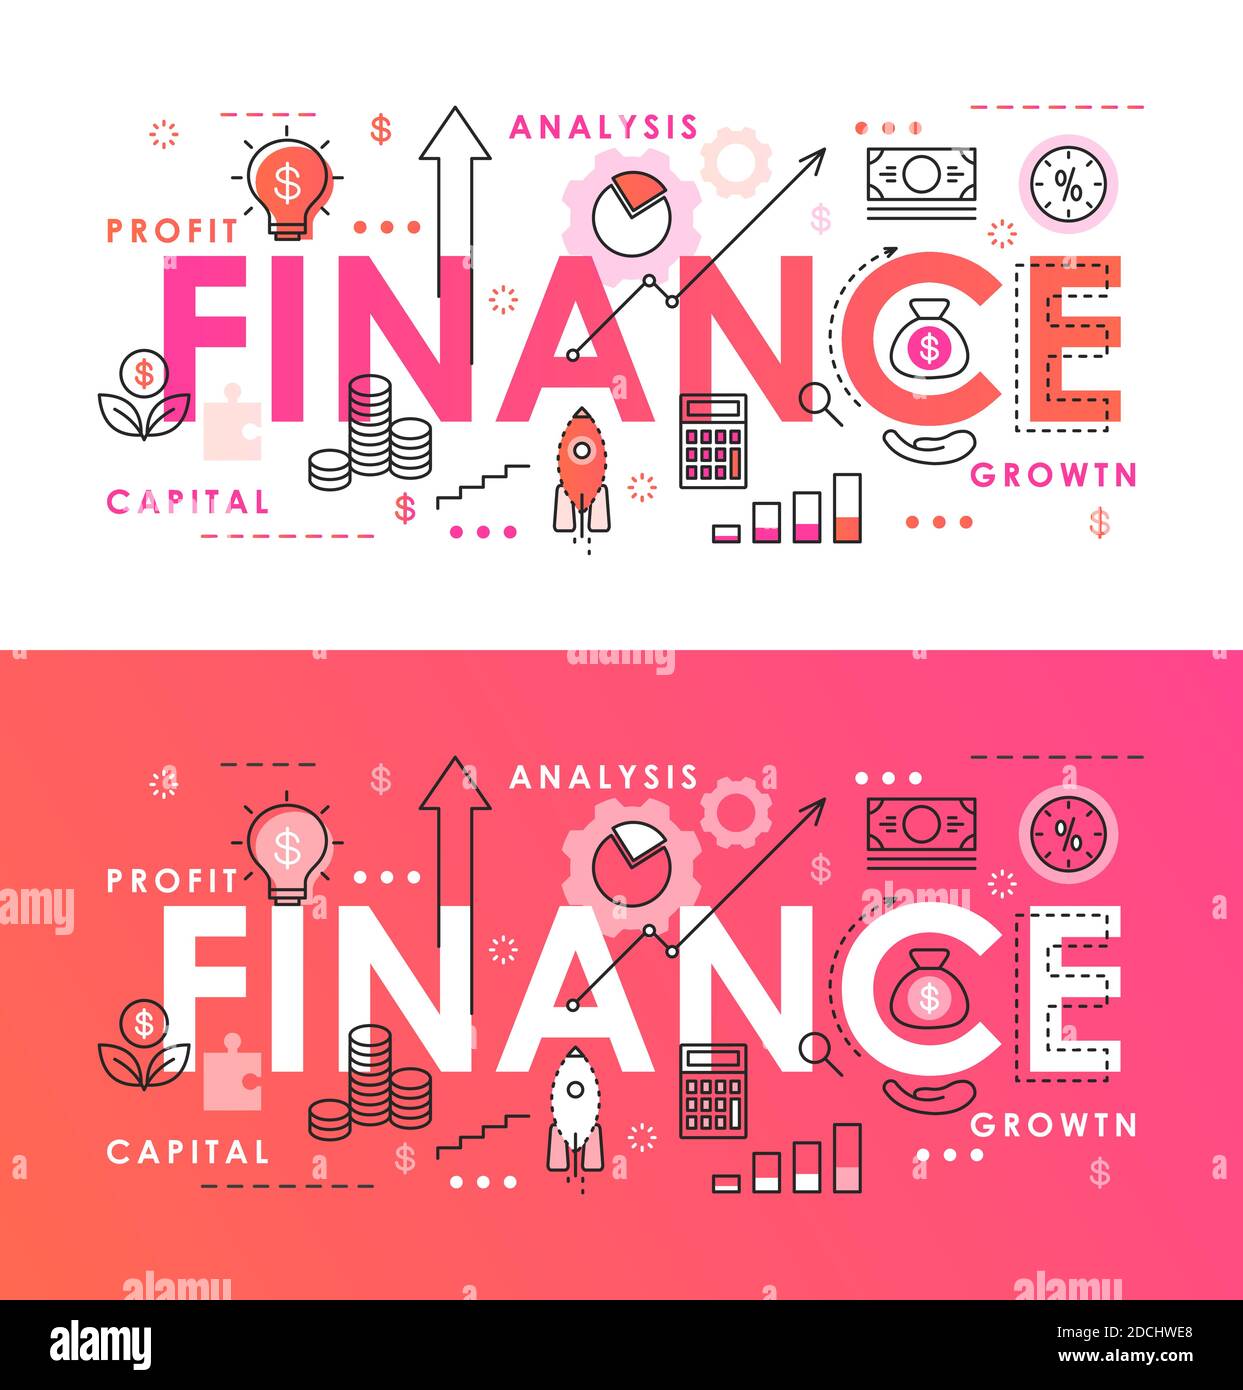 Illustrazione vettoriale sottile astratta della parola di finanza, banner di pagina di infografica piatta con simboli di analisi finanziaria per azienda di affari Illustrazione Vettoriale